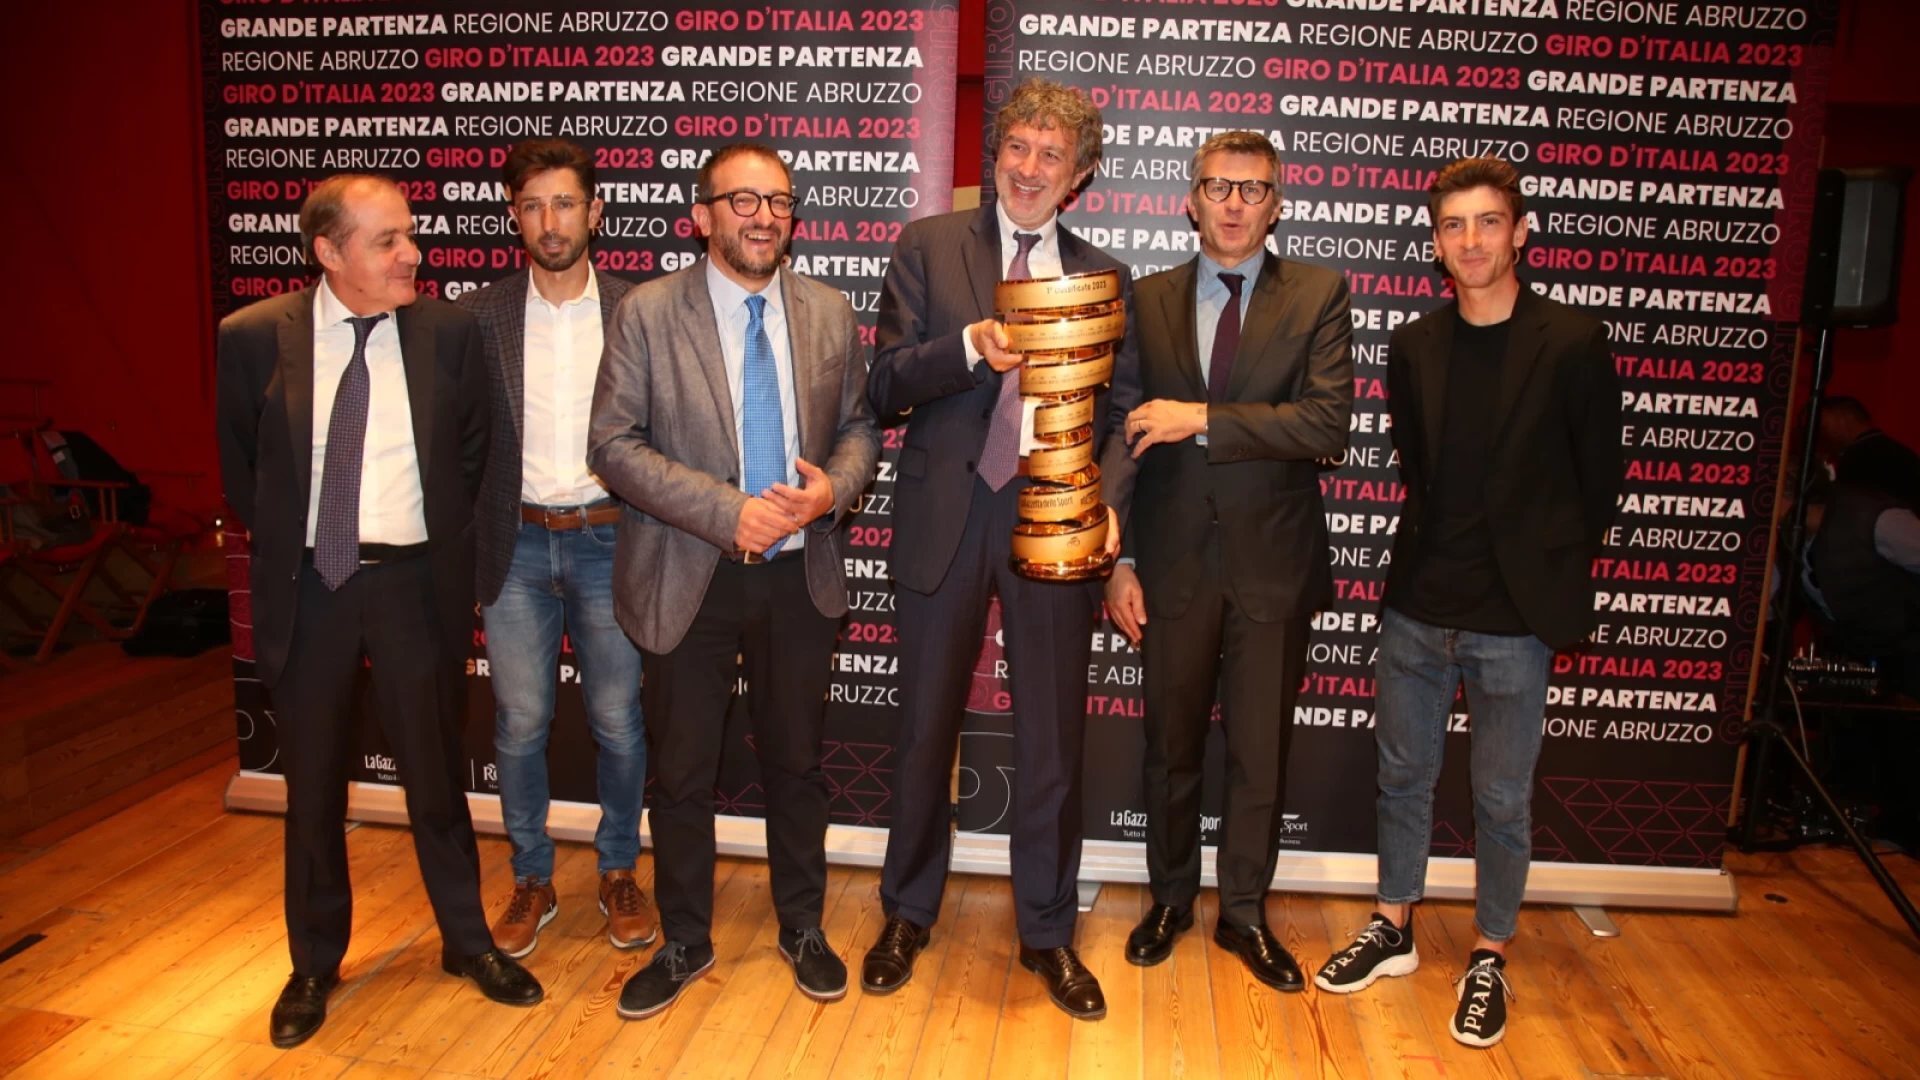 Giro D'ITALIA 2023: Marsilio, in Abruzzo la grande partenza